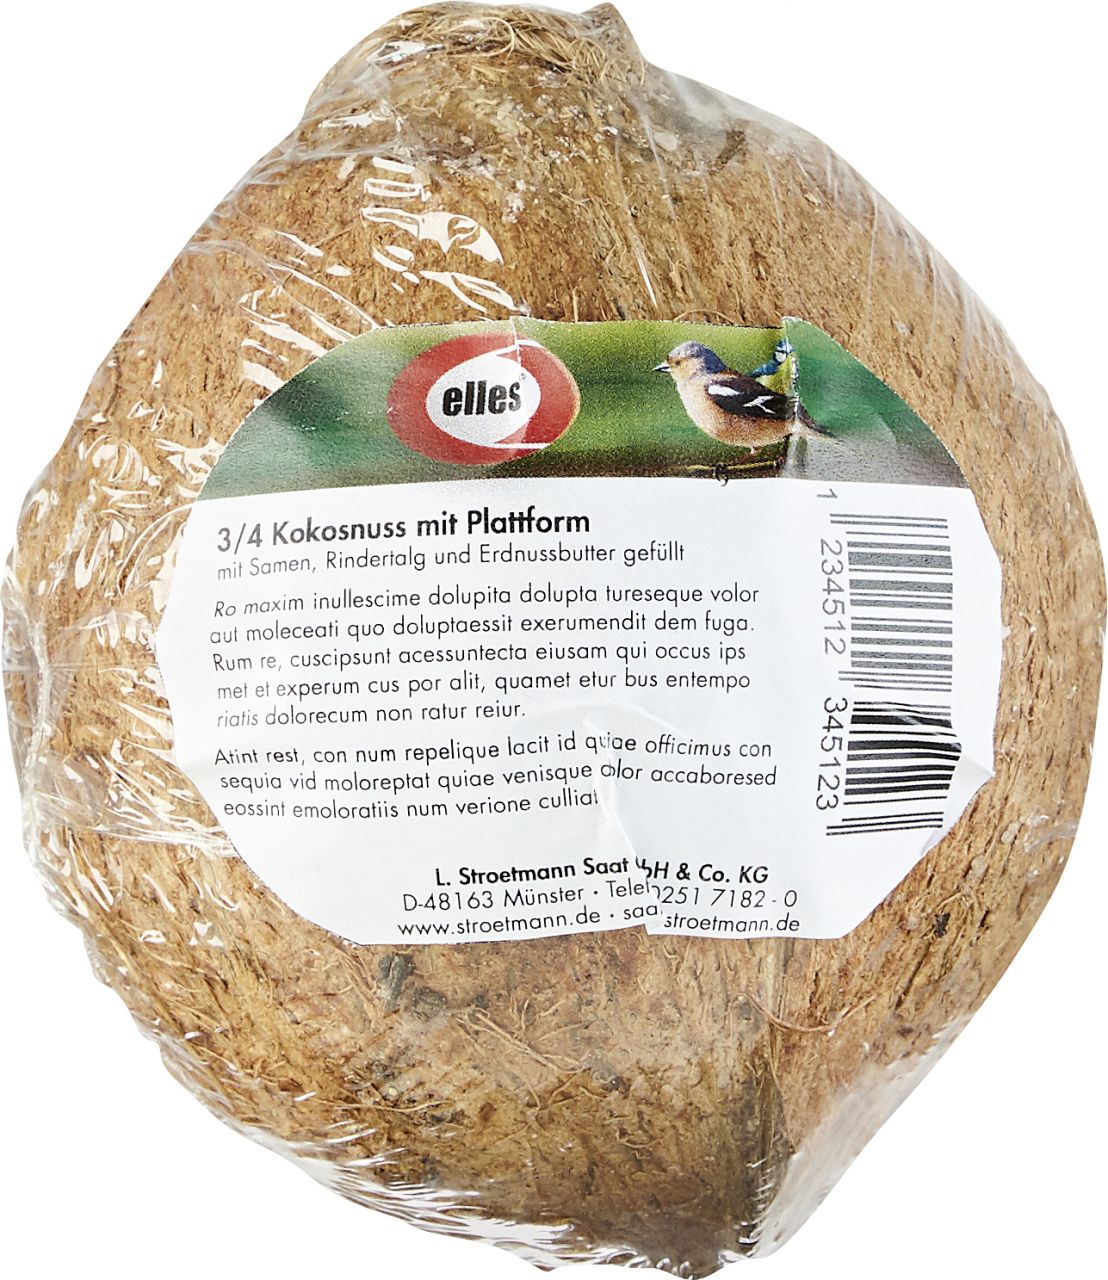 Elles Vogelfutter – Erdnussbuttermix 400 g in 3/4 Kokosnuss GLO629101183